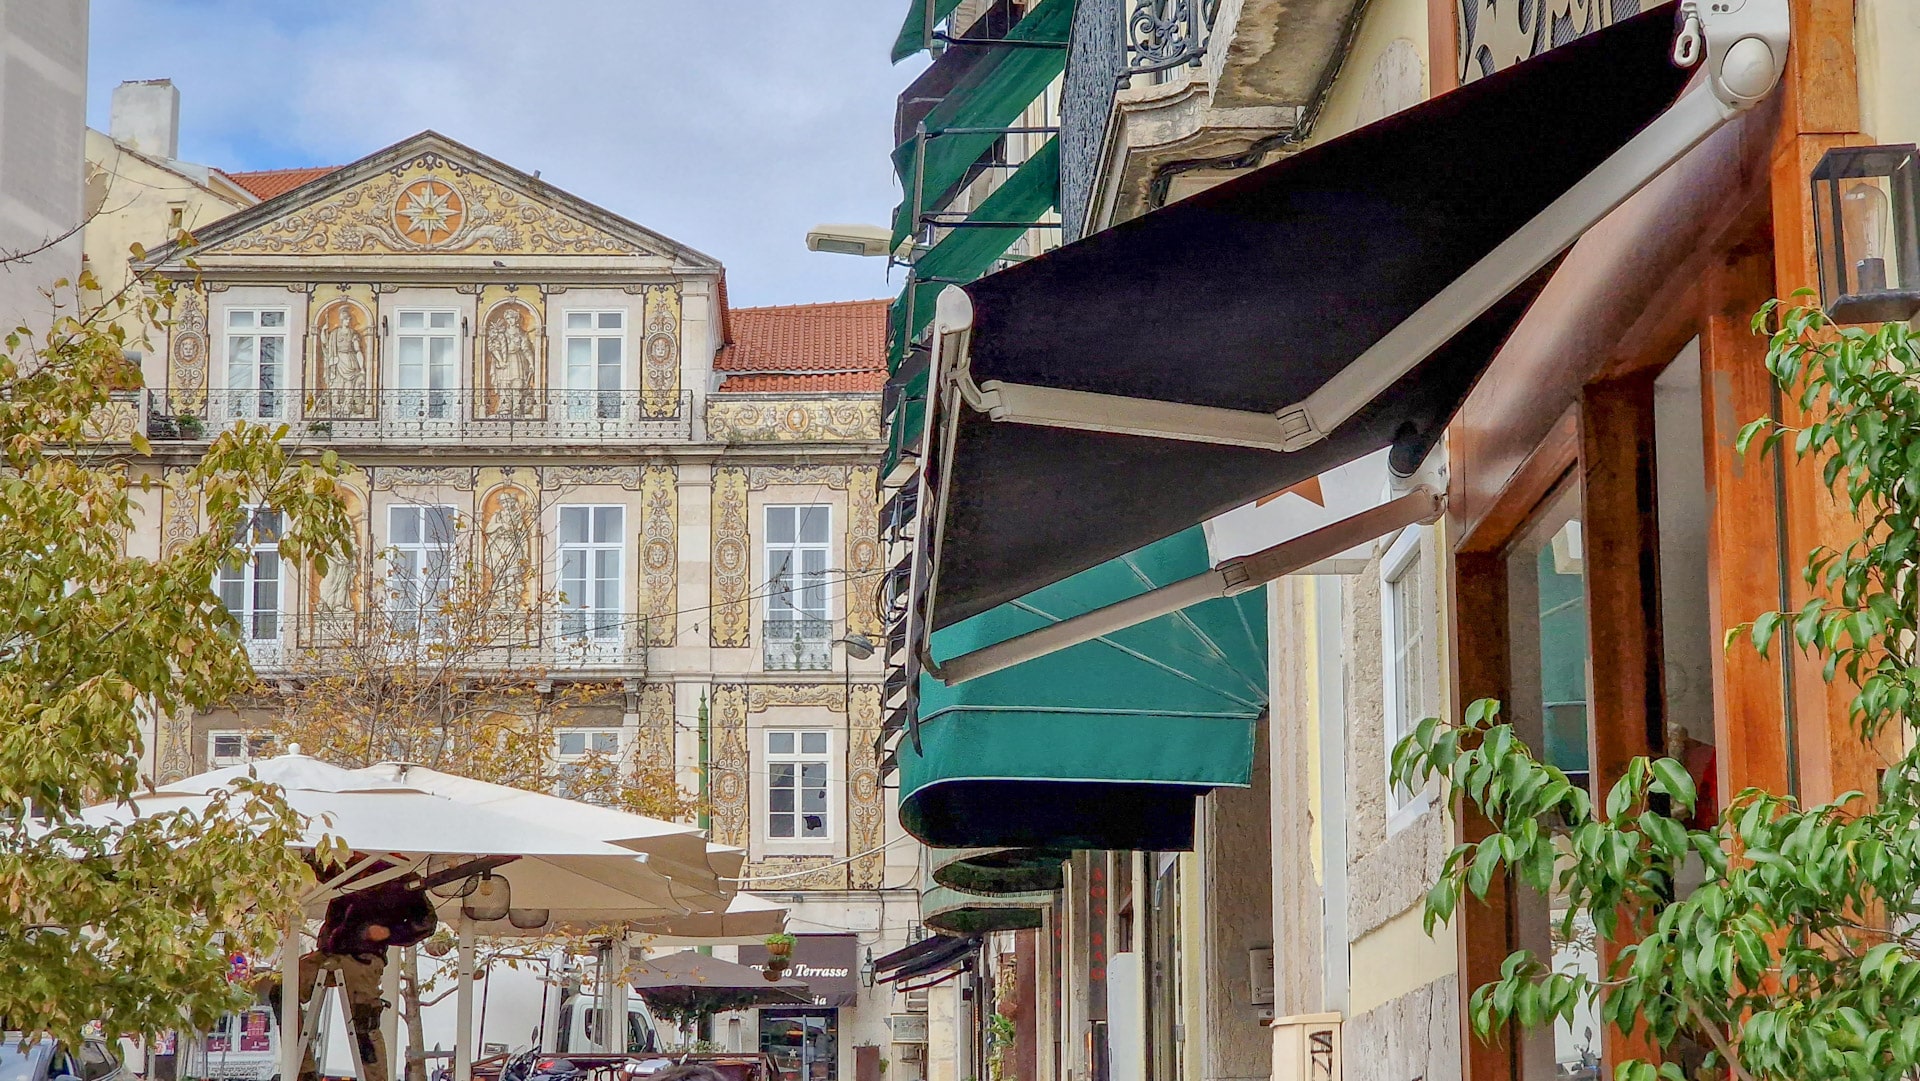 Baixa i Chiado són dos famosos barris de Lisboa coneguts per la seva arquitectura, cafès, botigues i ambient nocturn